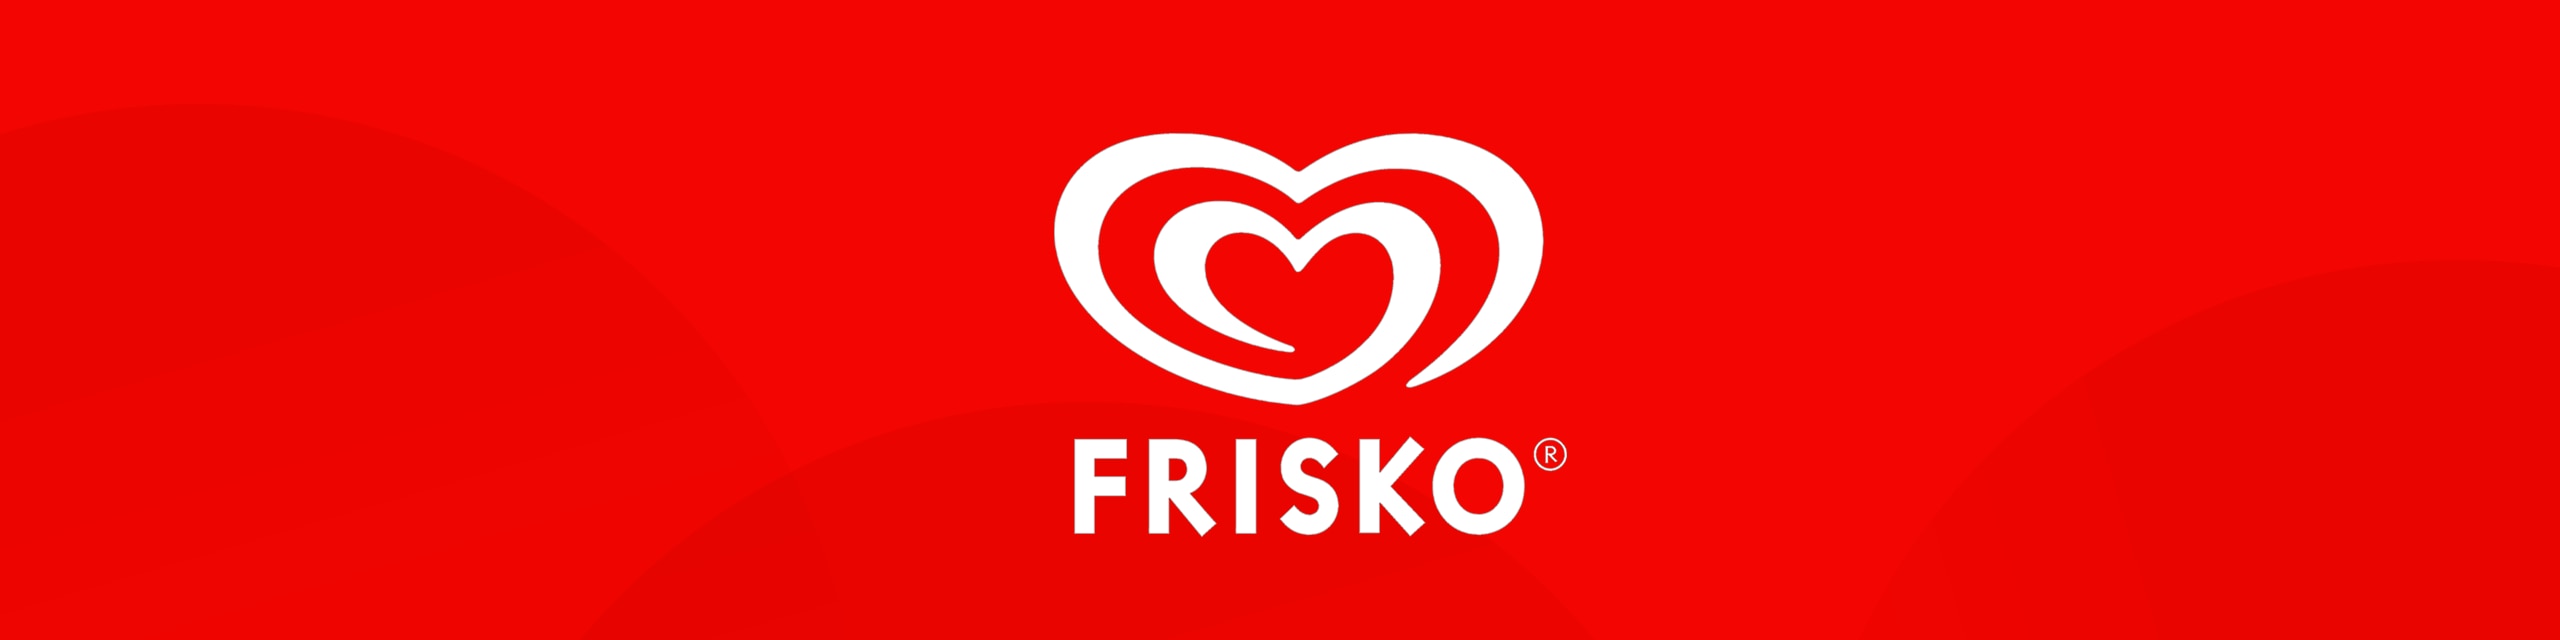 Frisko Hvidt hjerte logo på rød baggrund